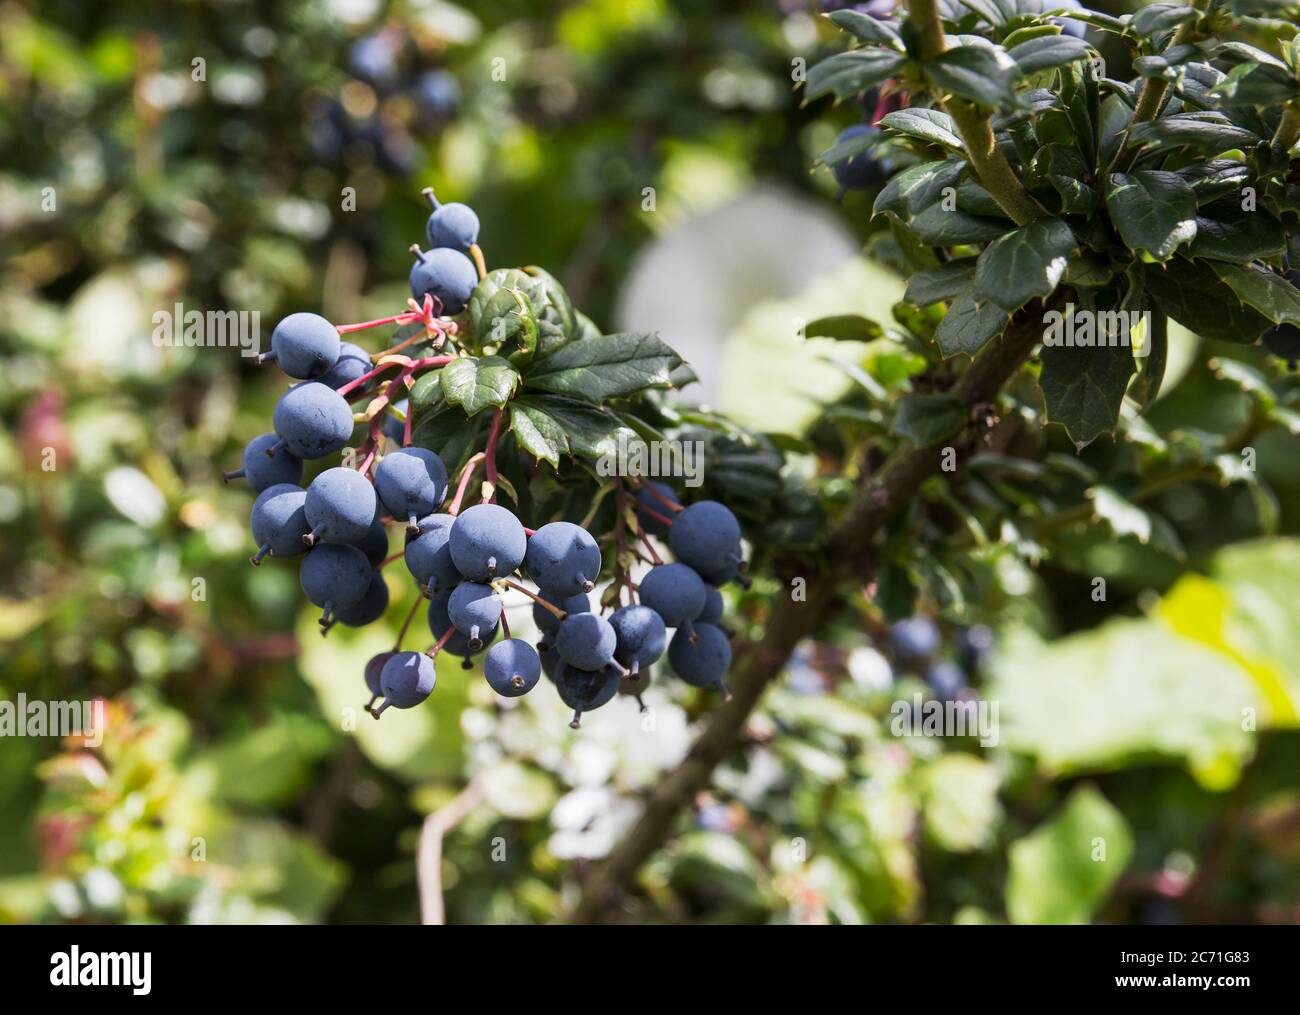 Frucht des Schlehdorns, Prunus spinosa, Schlehenbeeren haben viele Verwendungen einschließlich der Herstellung von Schlehenbrand. Stockfoto